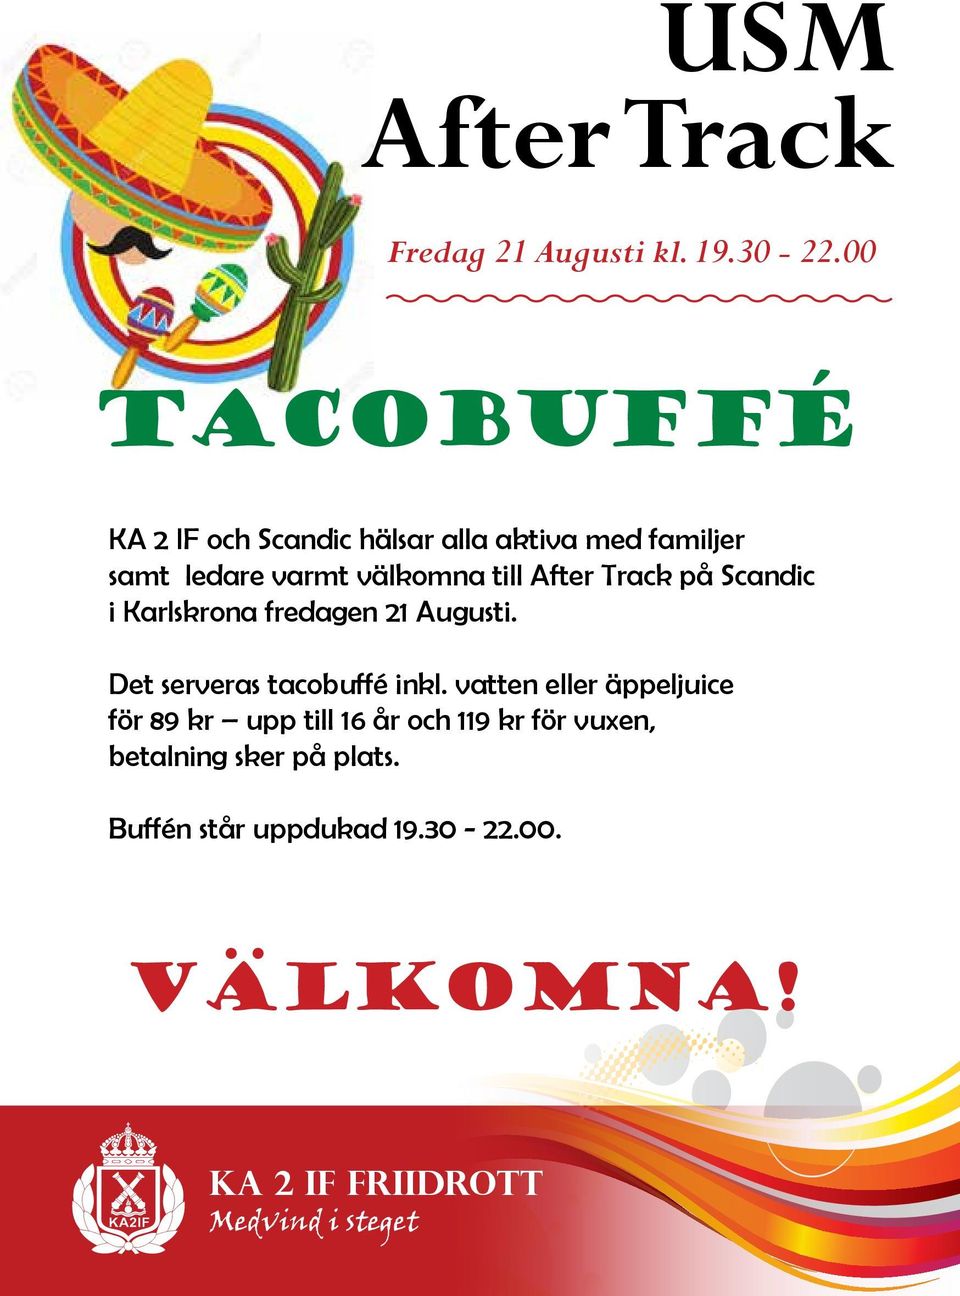 After Track på Scandic i Karlskrona fredagen 21 Augusti. Det serveras tacobuffé inkl.